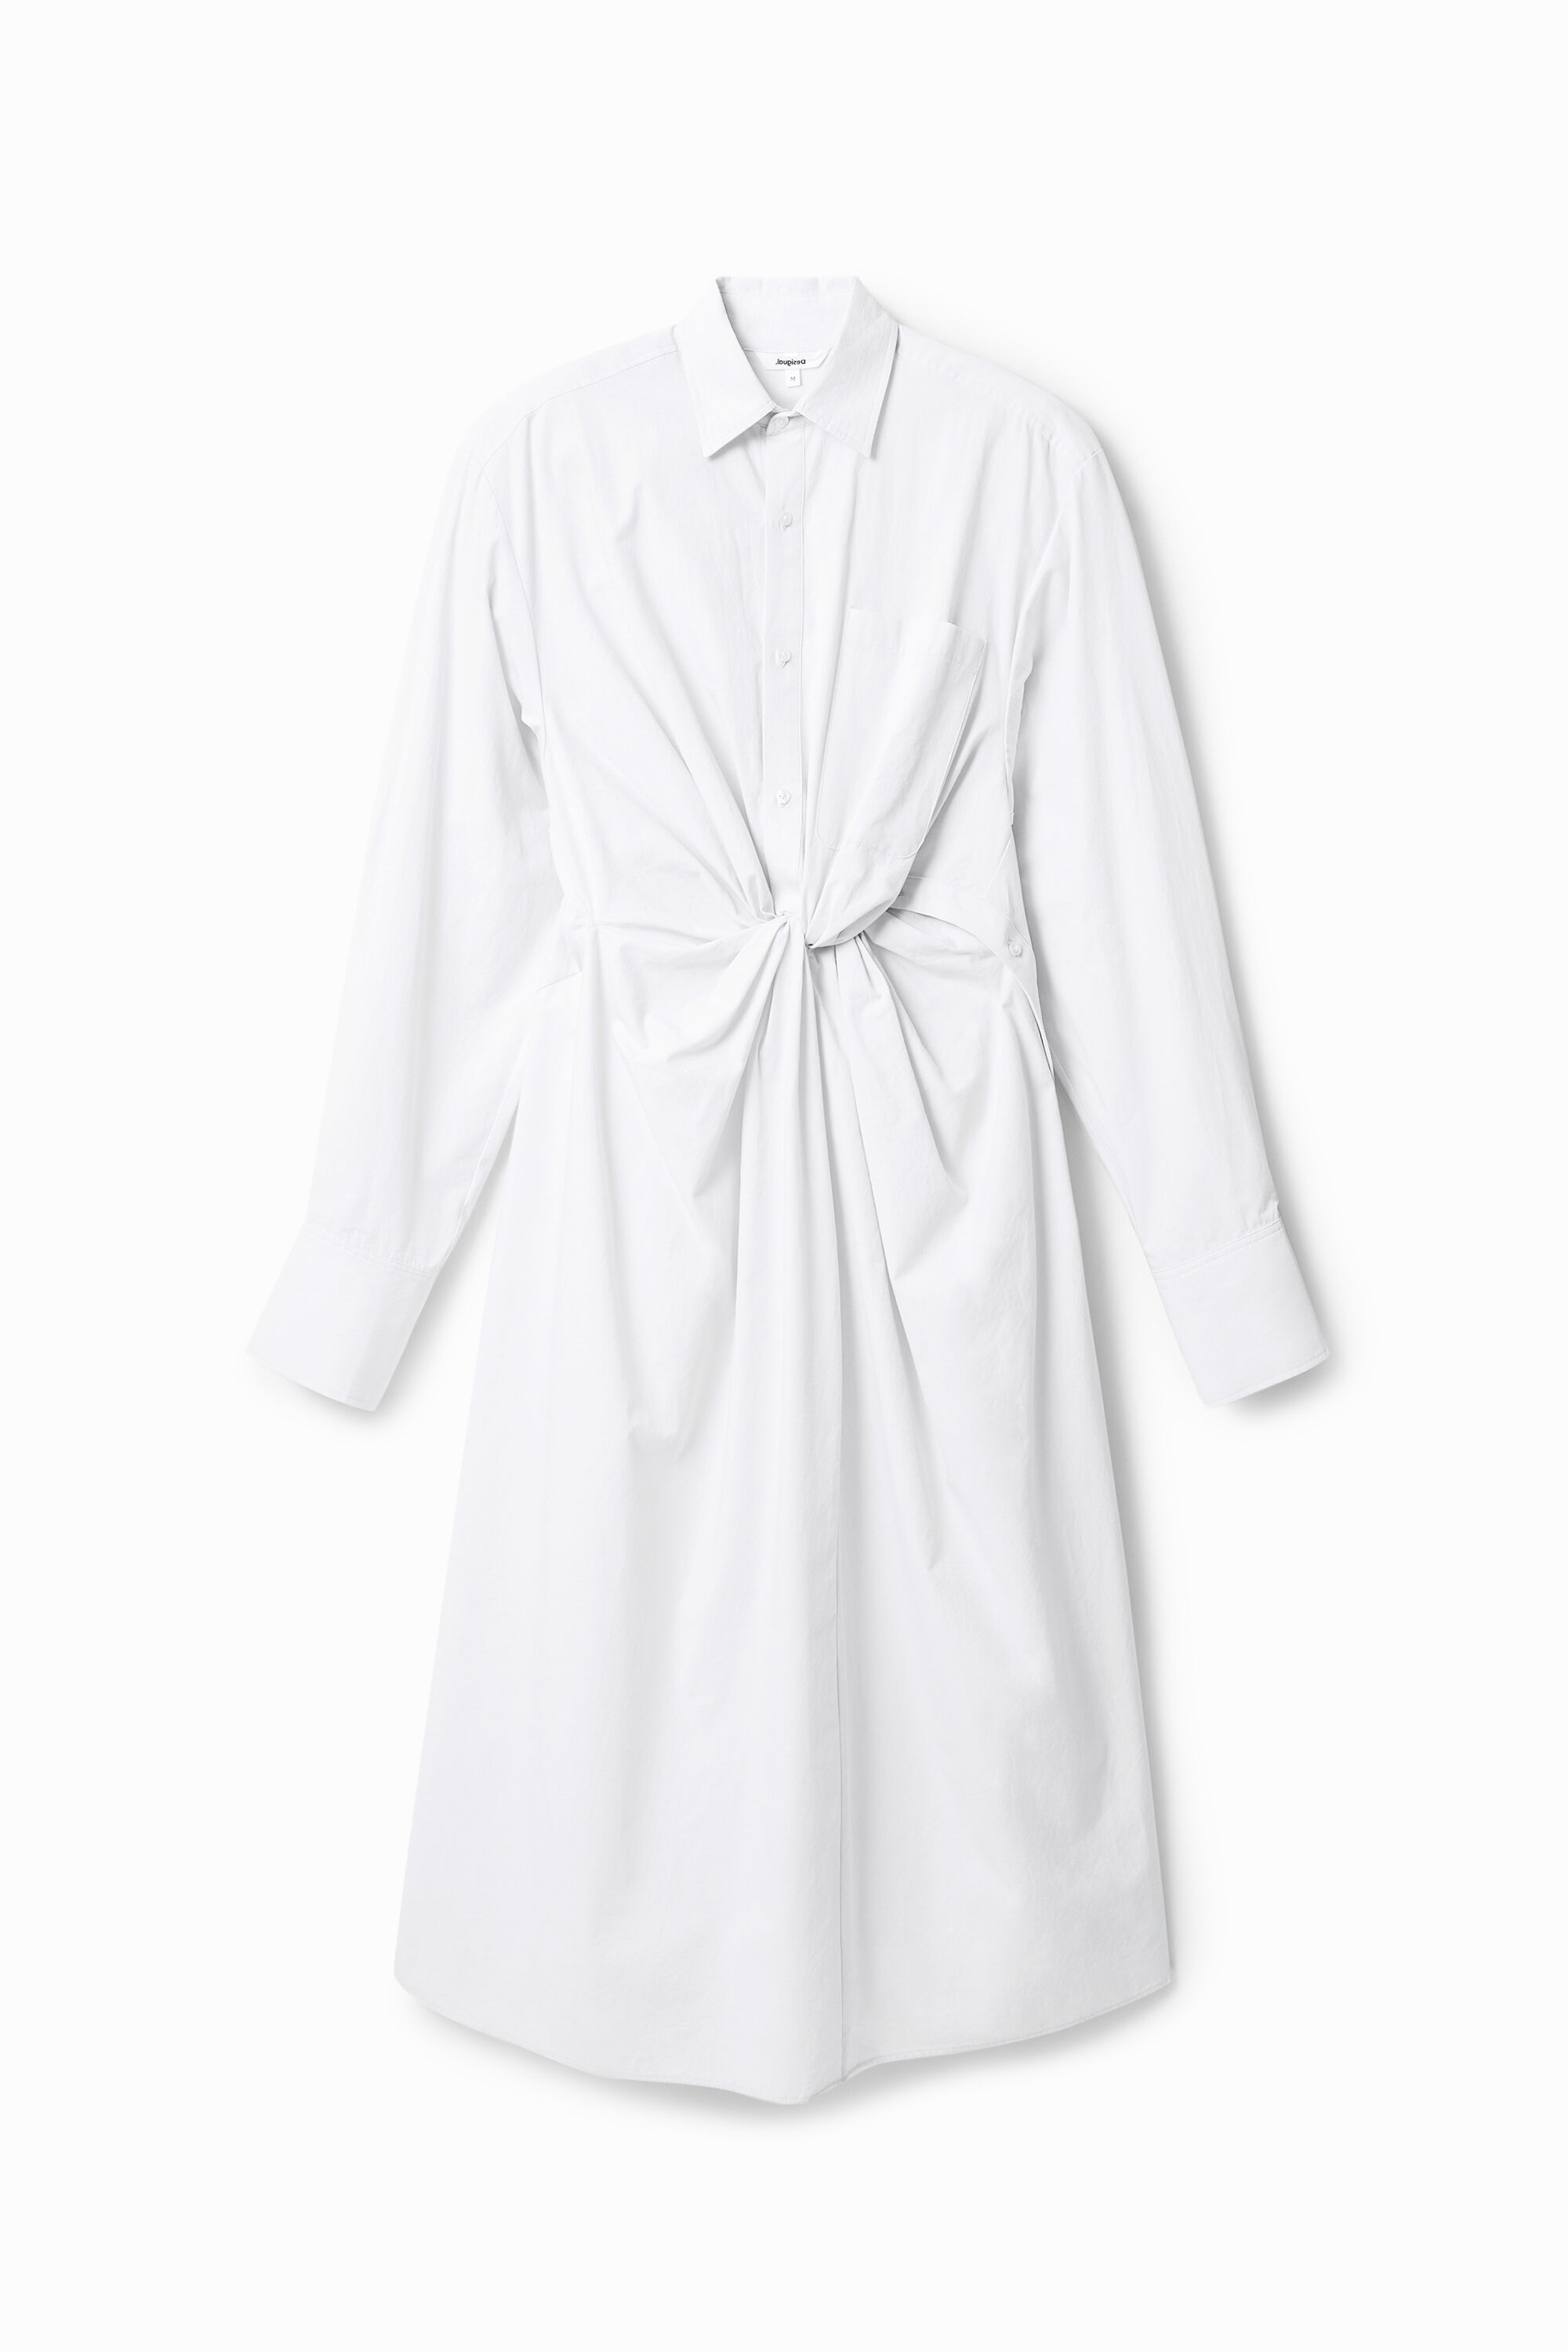 Maitrepierre long shirt dress - WHITE - S